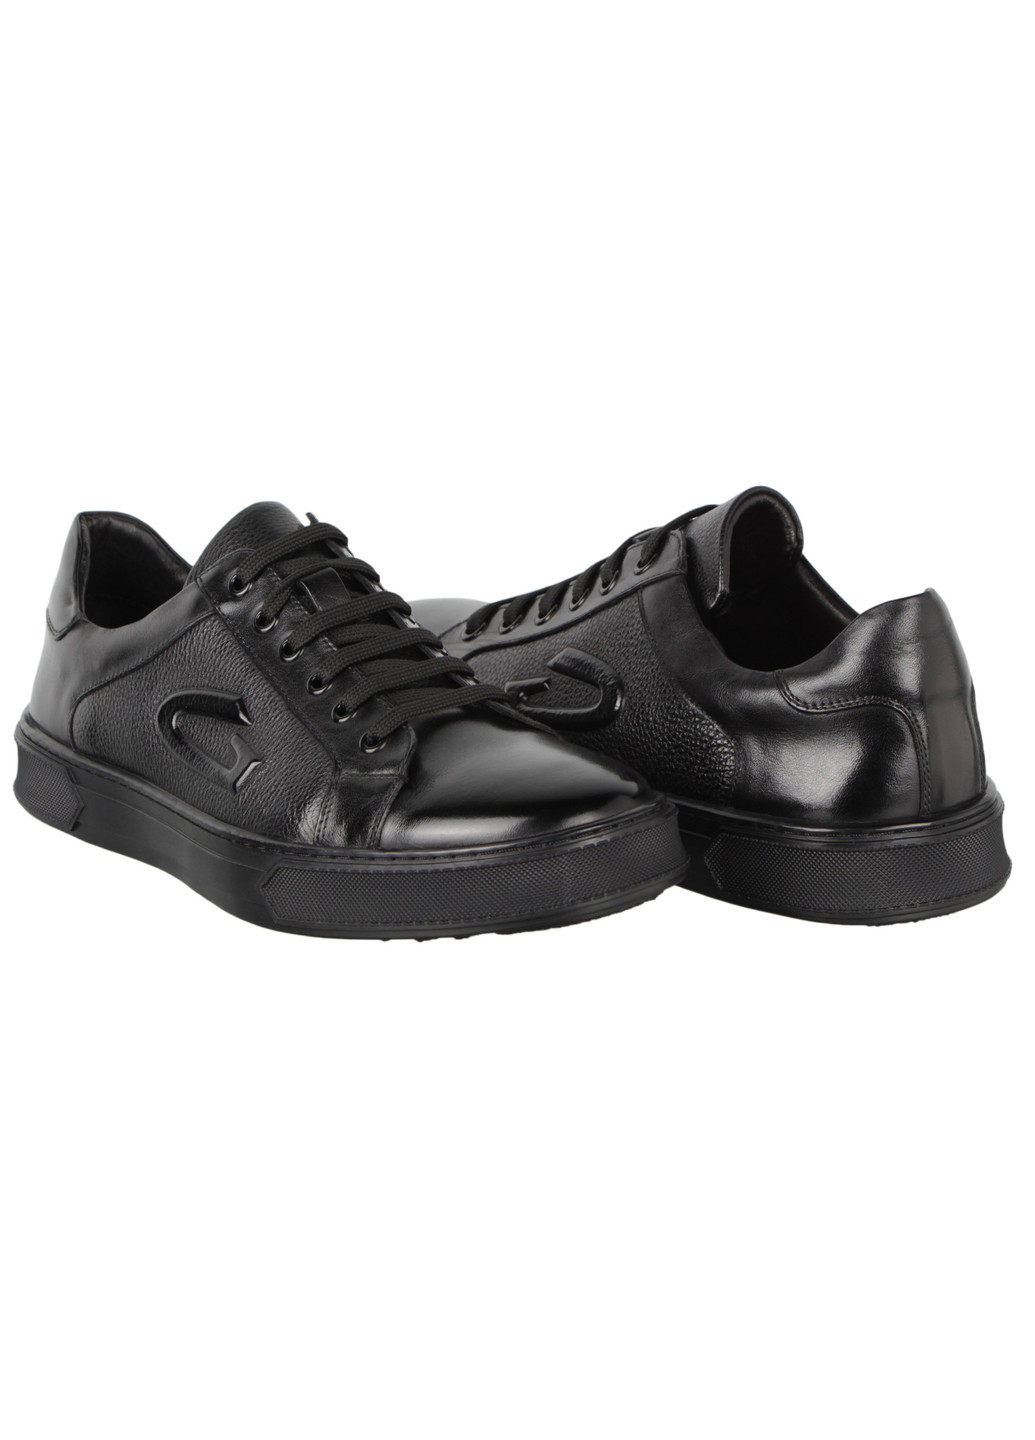 Черные демисезонные мужские кроссовки 197610 Buts